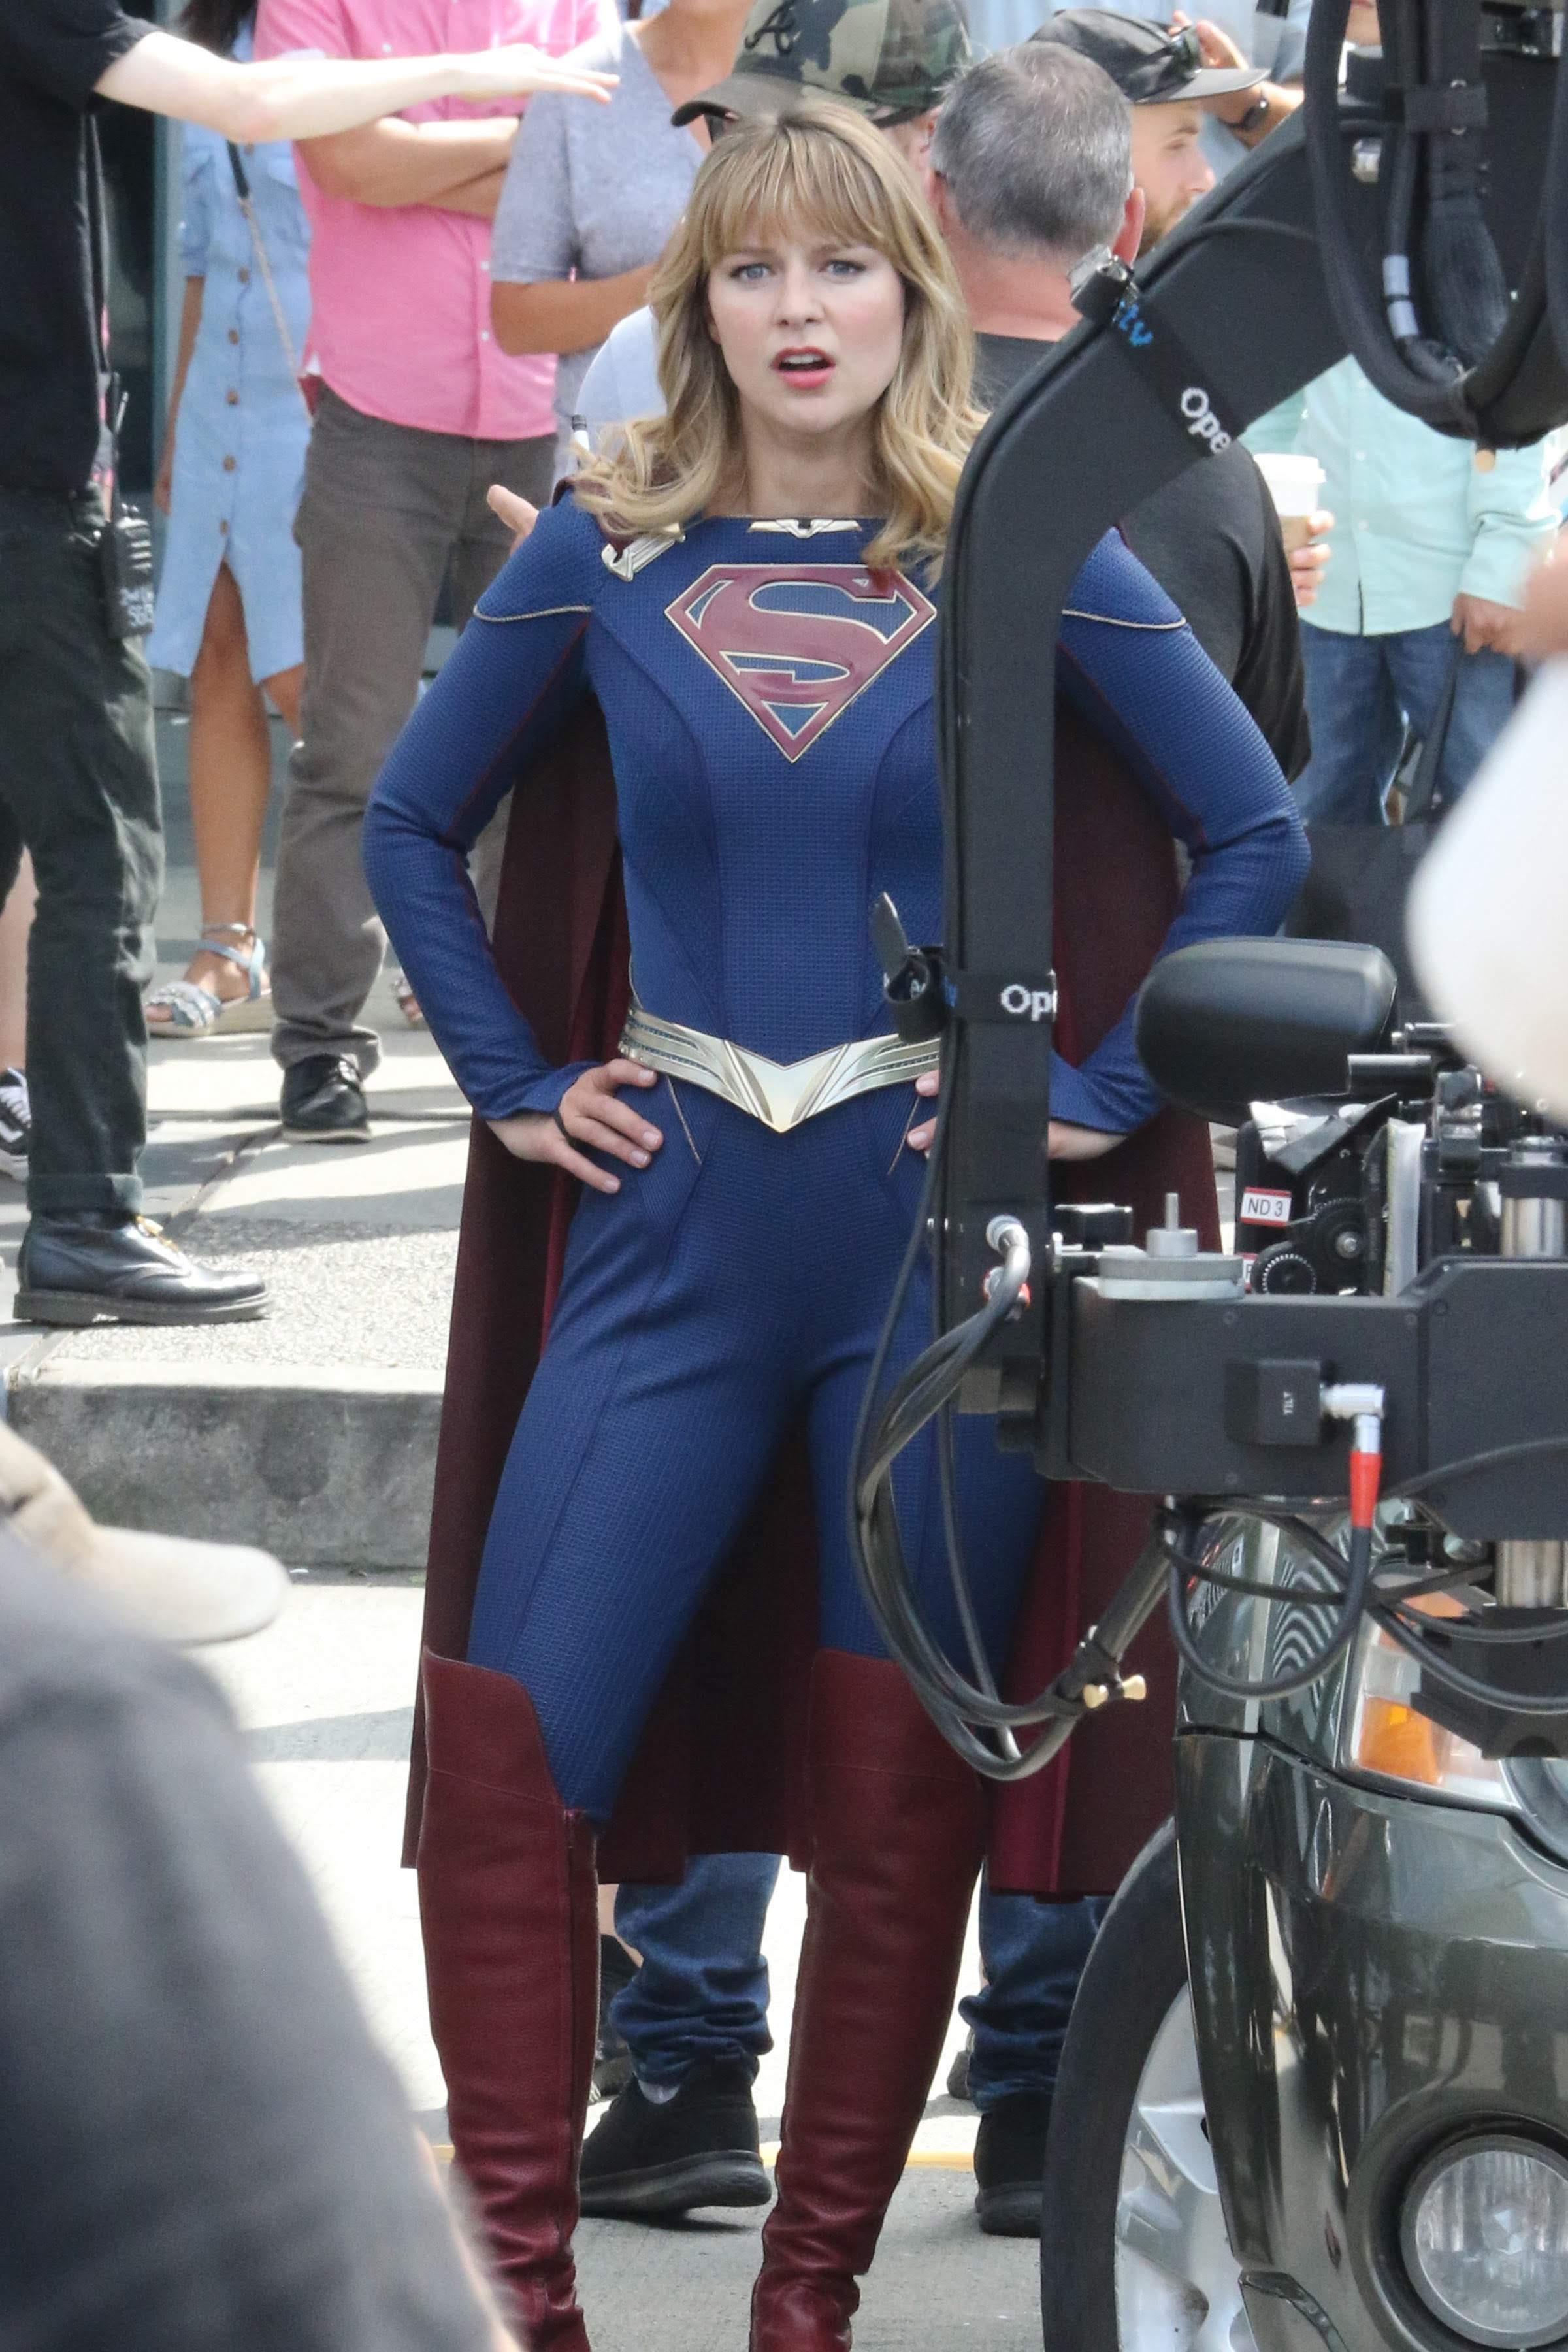 Melissa Benoist On The Set Of Supergirl In Her New Costume 空飛ぶヒロインの新コスチュームを身に着けたメリッサ ベノイストが初めて 公けの場に登場した スーパーガール シーズン 5 撮影中のセット フォト B Side Of Cia